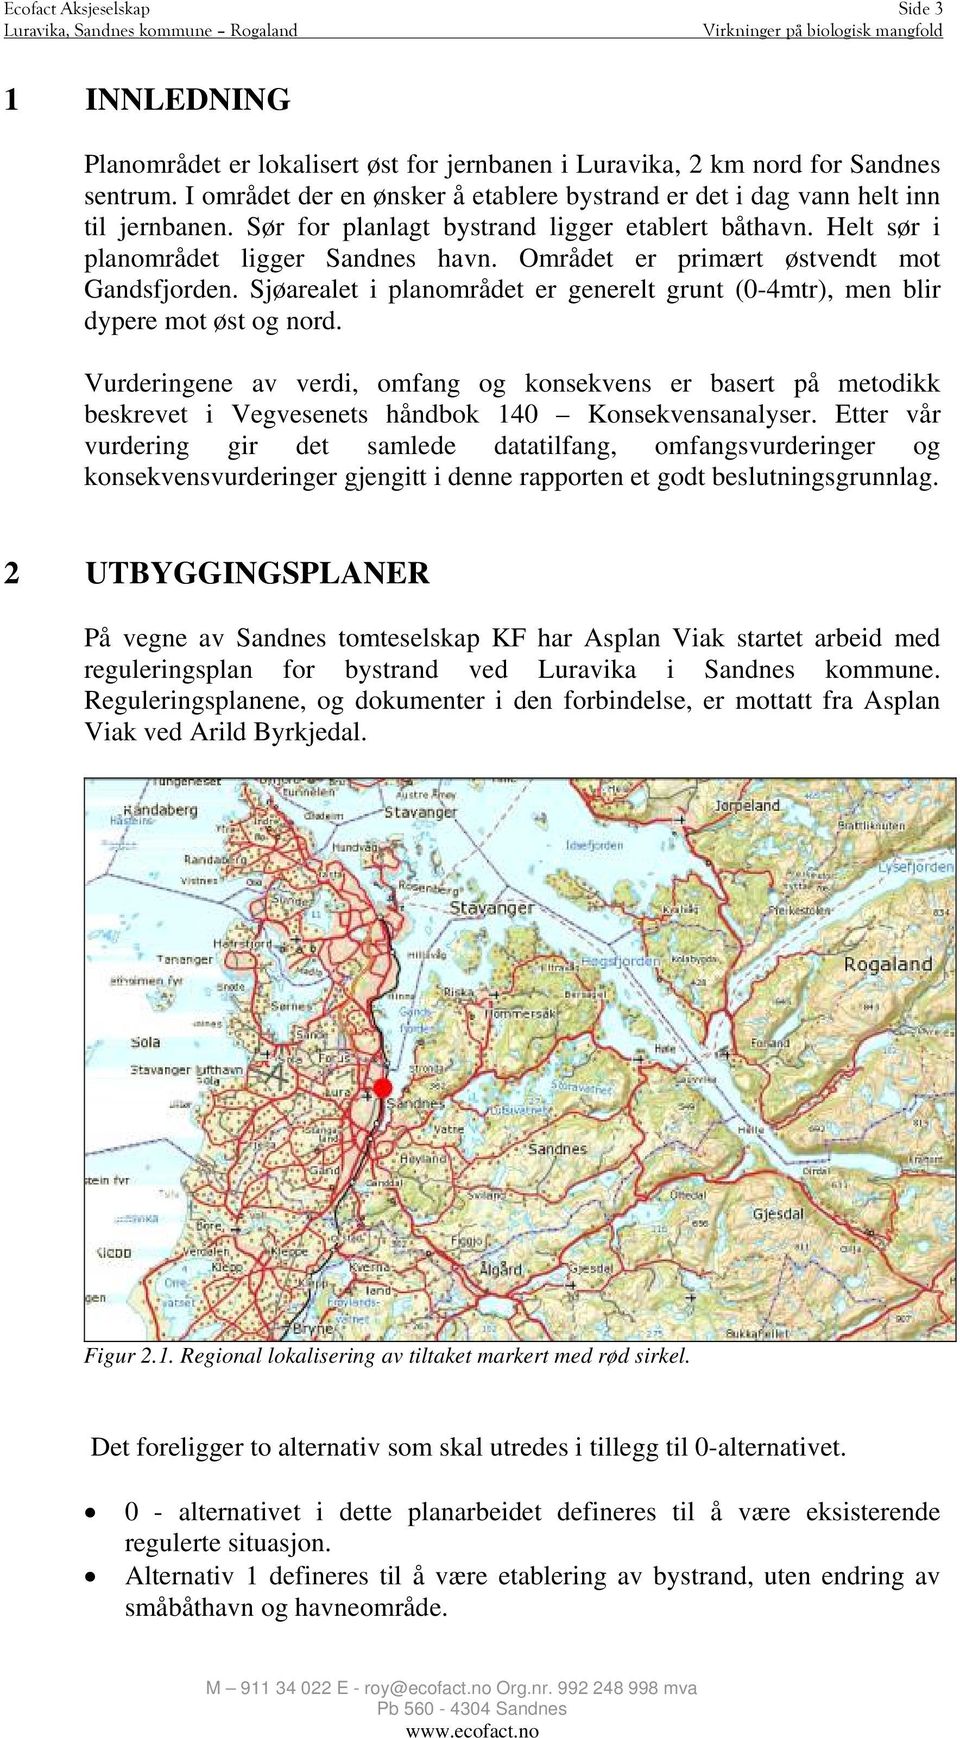 Området er primært østvendt mot Gandsfjorden. Sjøarealet i planområdet er generelt grunt (0-4mtr), men blir dypere mot øst og nord.